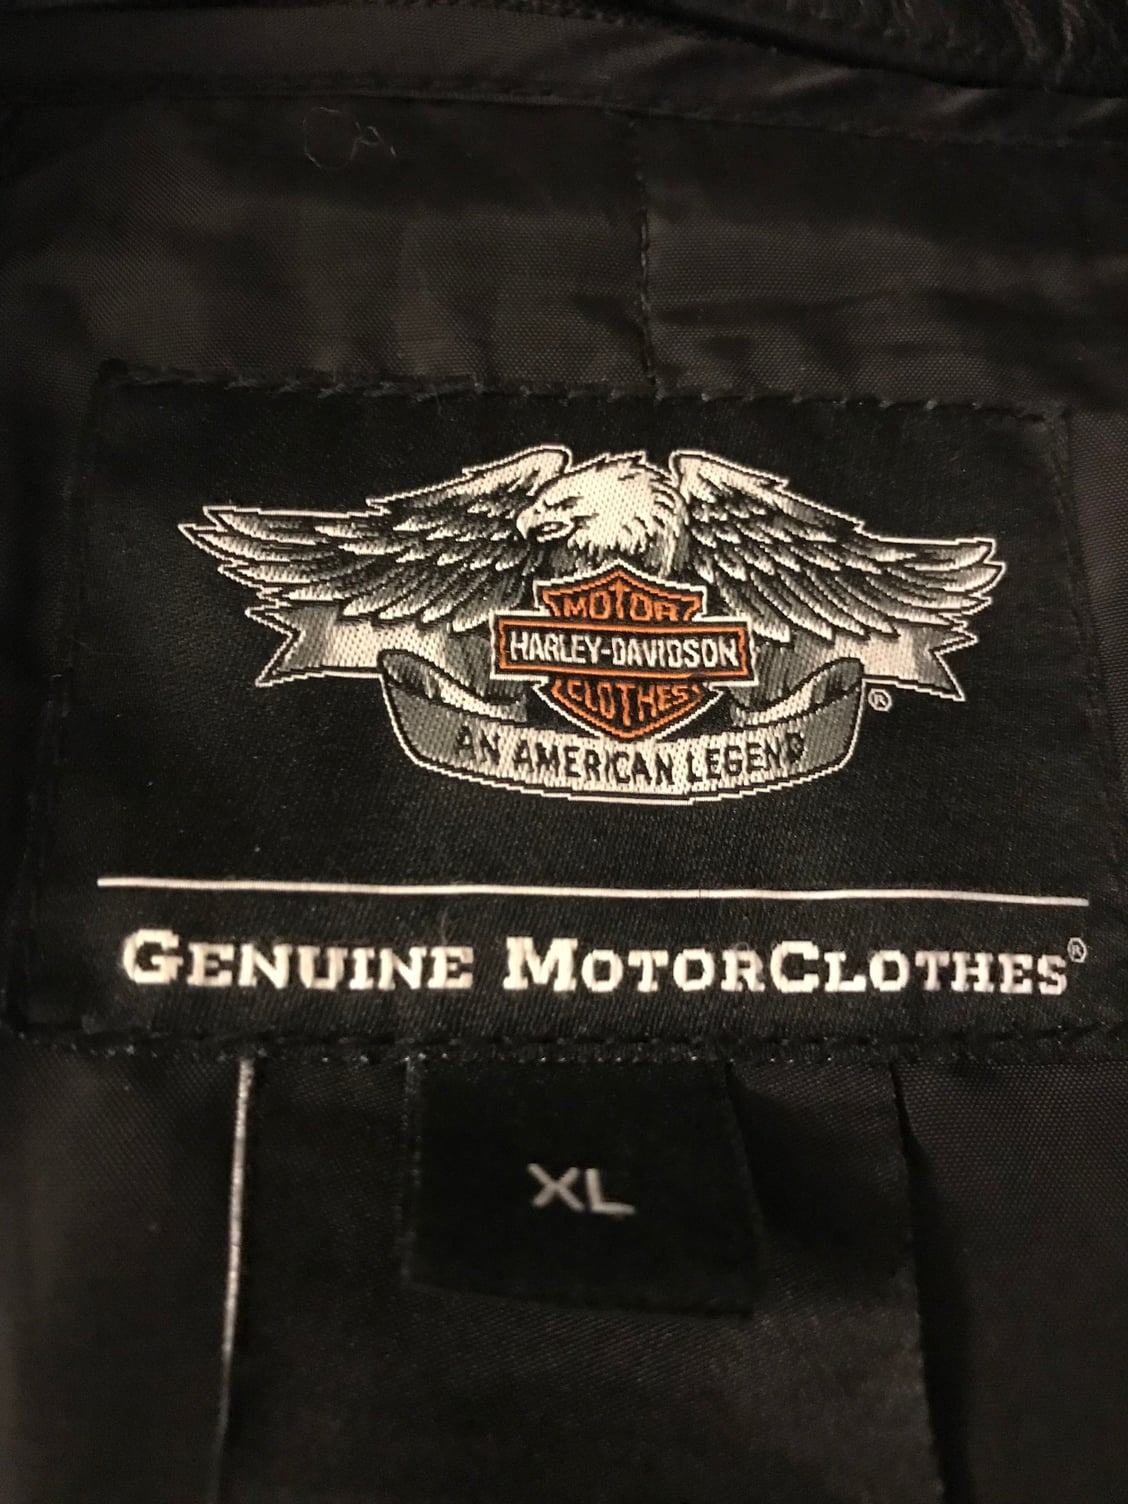 Harley Davidson Leather for sale - Harley Davidson Forums